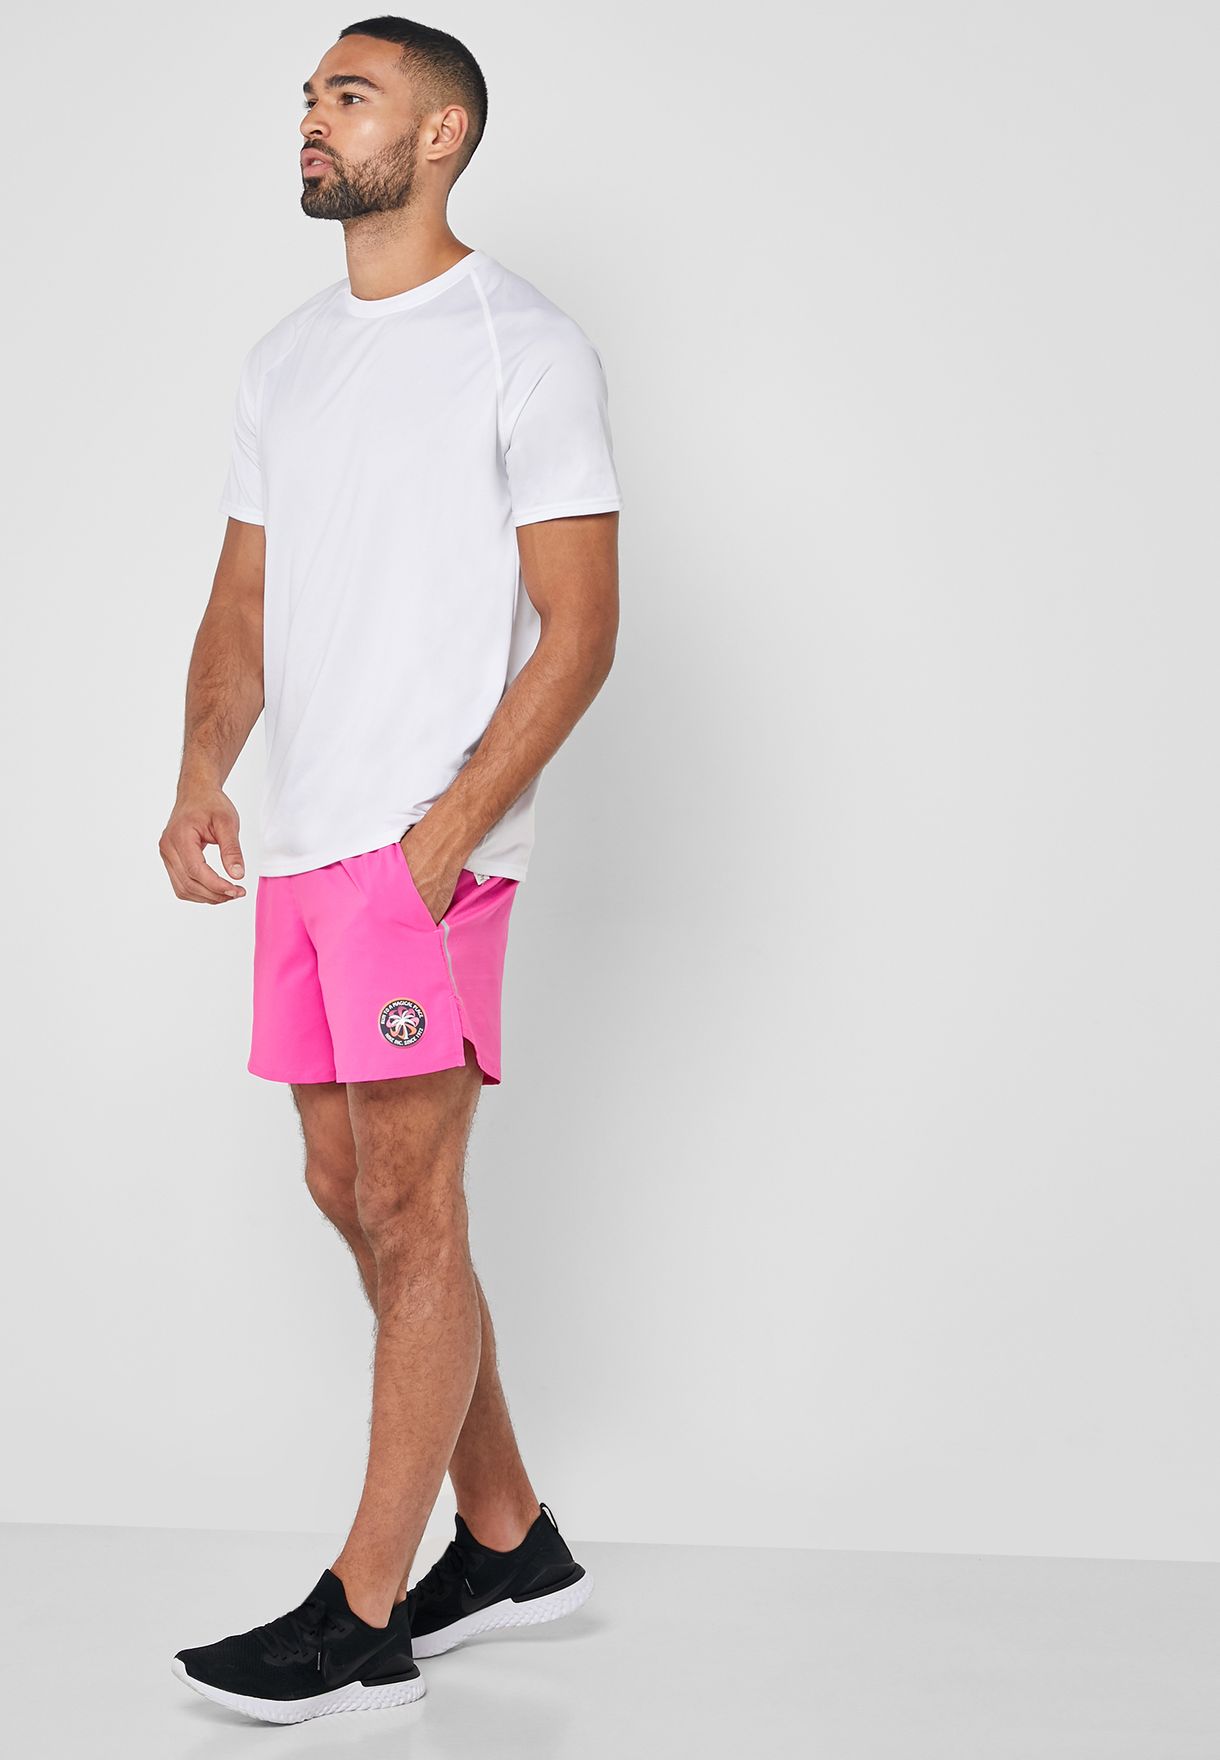 mens pink shorts nike